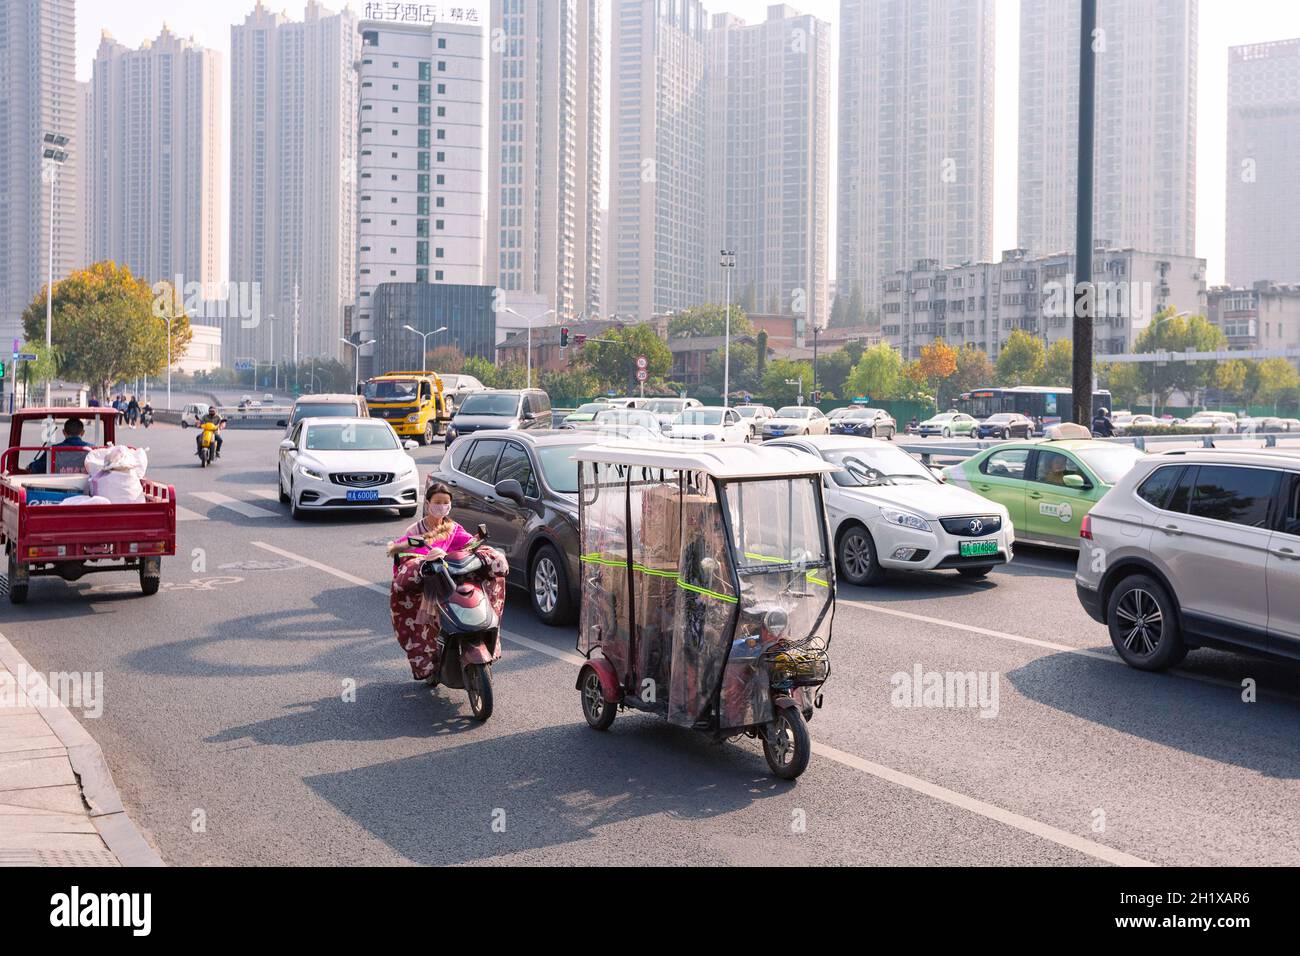 Hefei, Cina - 5 novembre 2019: Persone in bicicletta elettrica sul bivio. Il tempo divenne freddo e ogni bicicletta elettrica era dotata di vento colorato Foto Stock